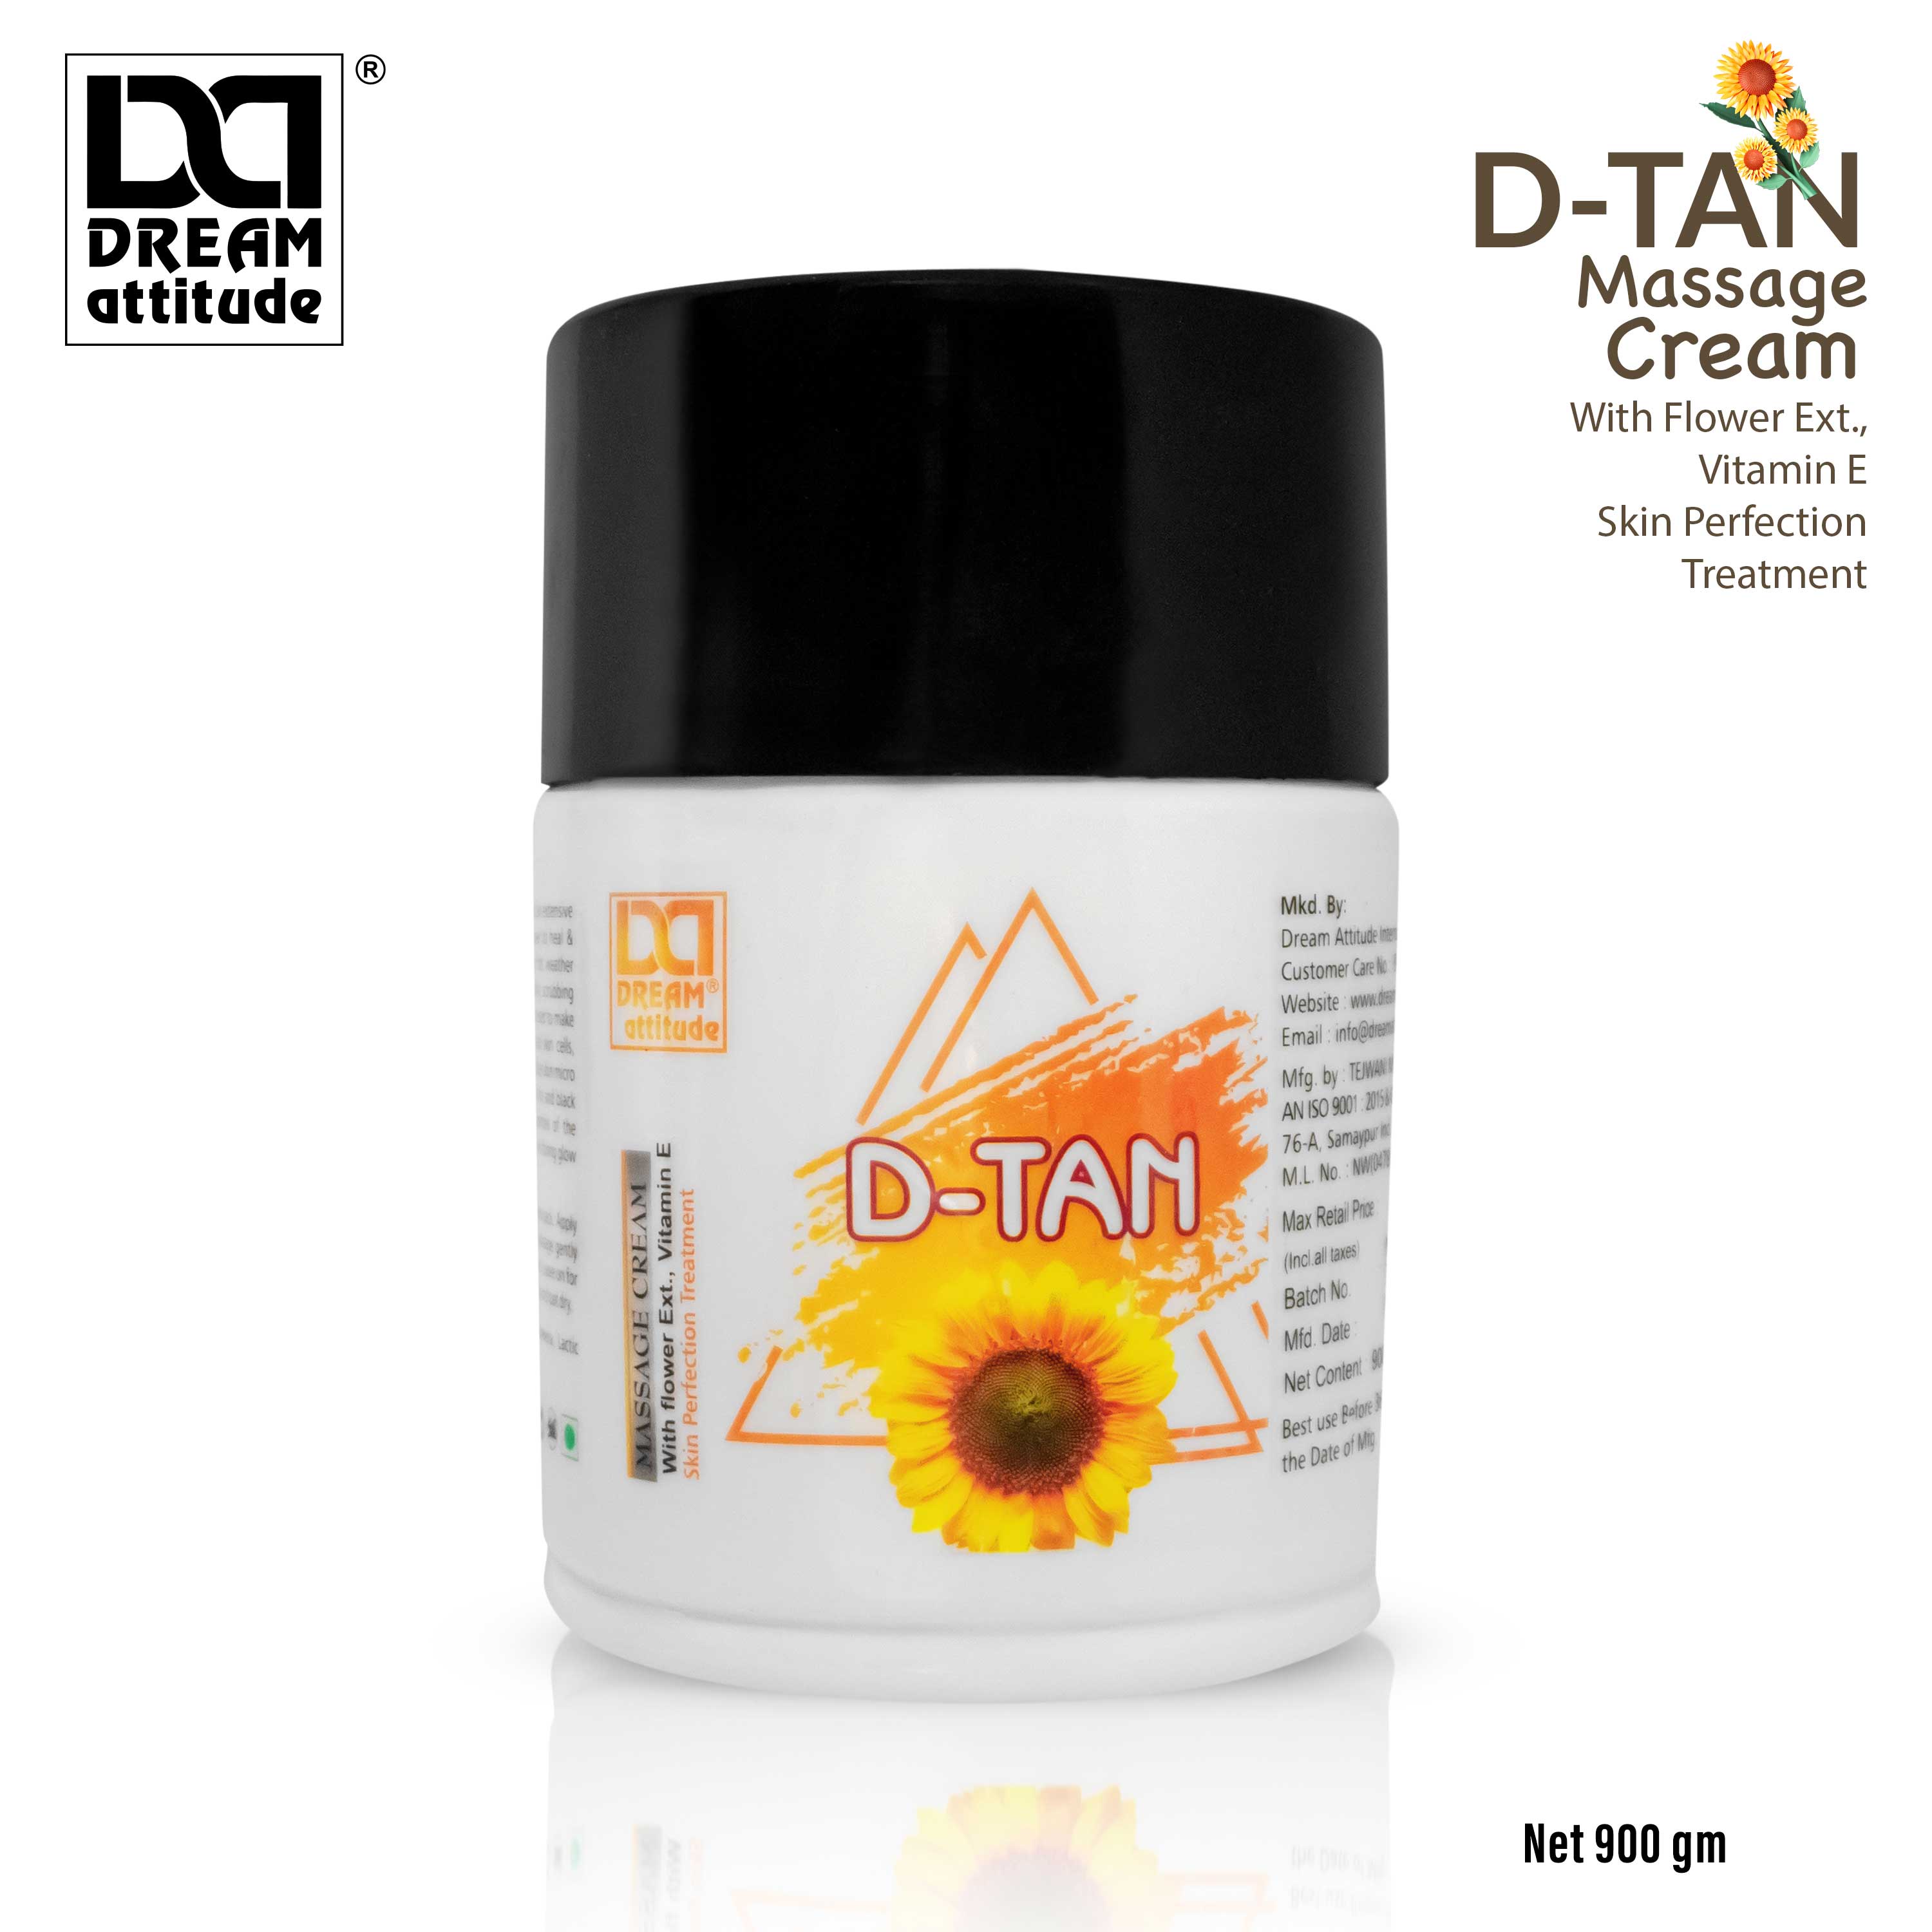 DREAM attitude De-Tan Massage Cream